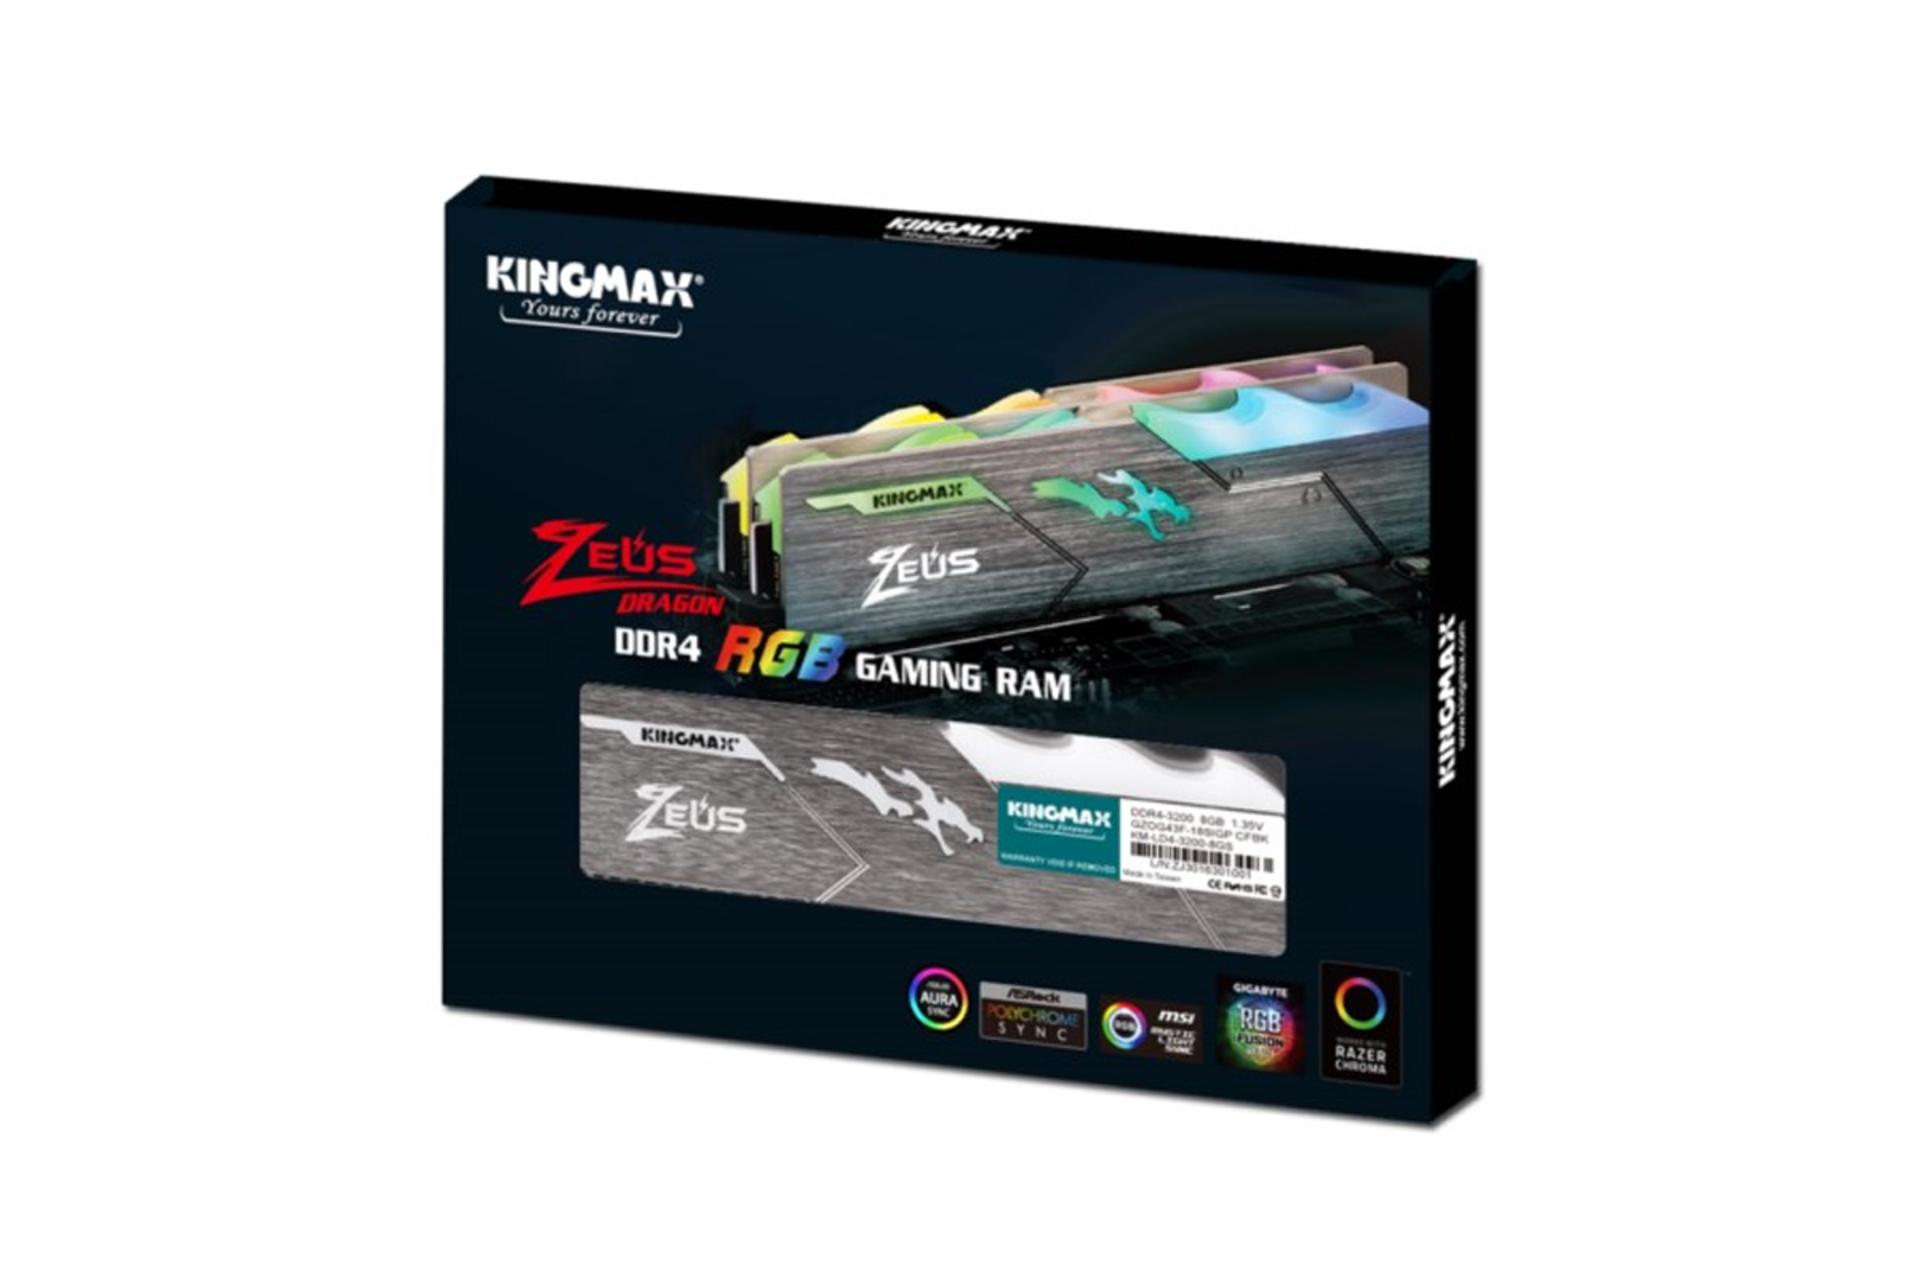 جعبه رم کینگ مکس Zeus Dragon RGB ظرفیت 8 گیگابایت از نوع DDR4-3200